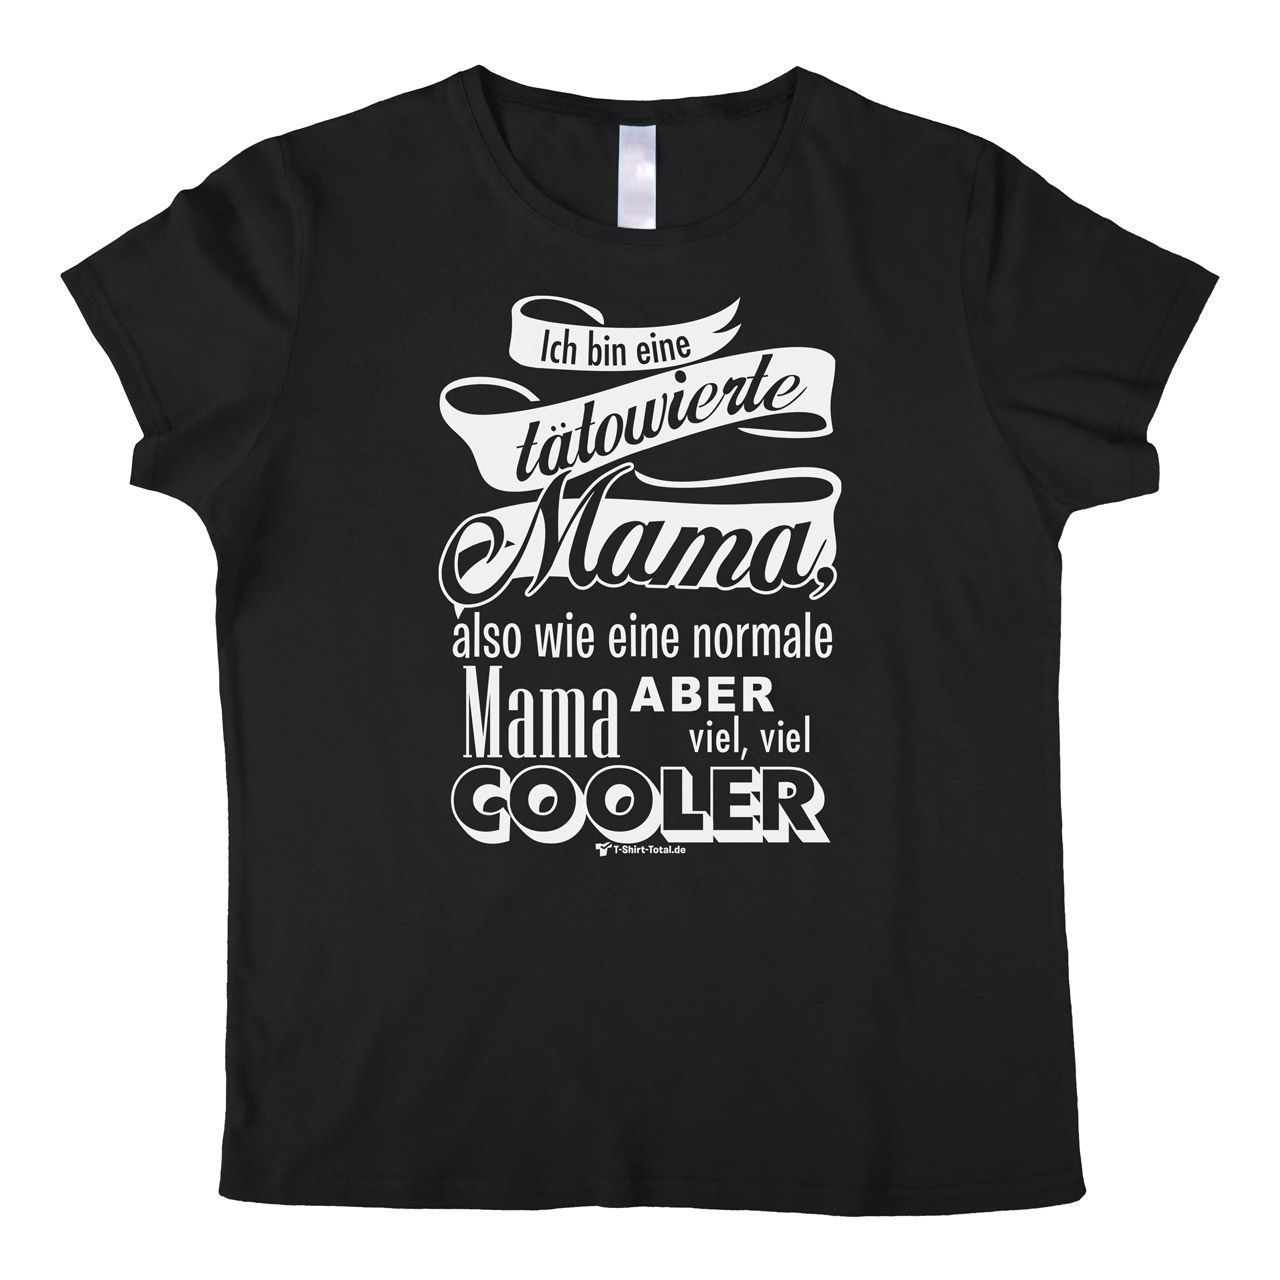 Tätowierte Mama Woman T-Shirt schwarz Small